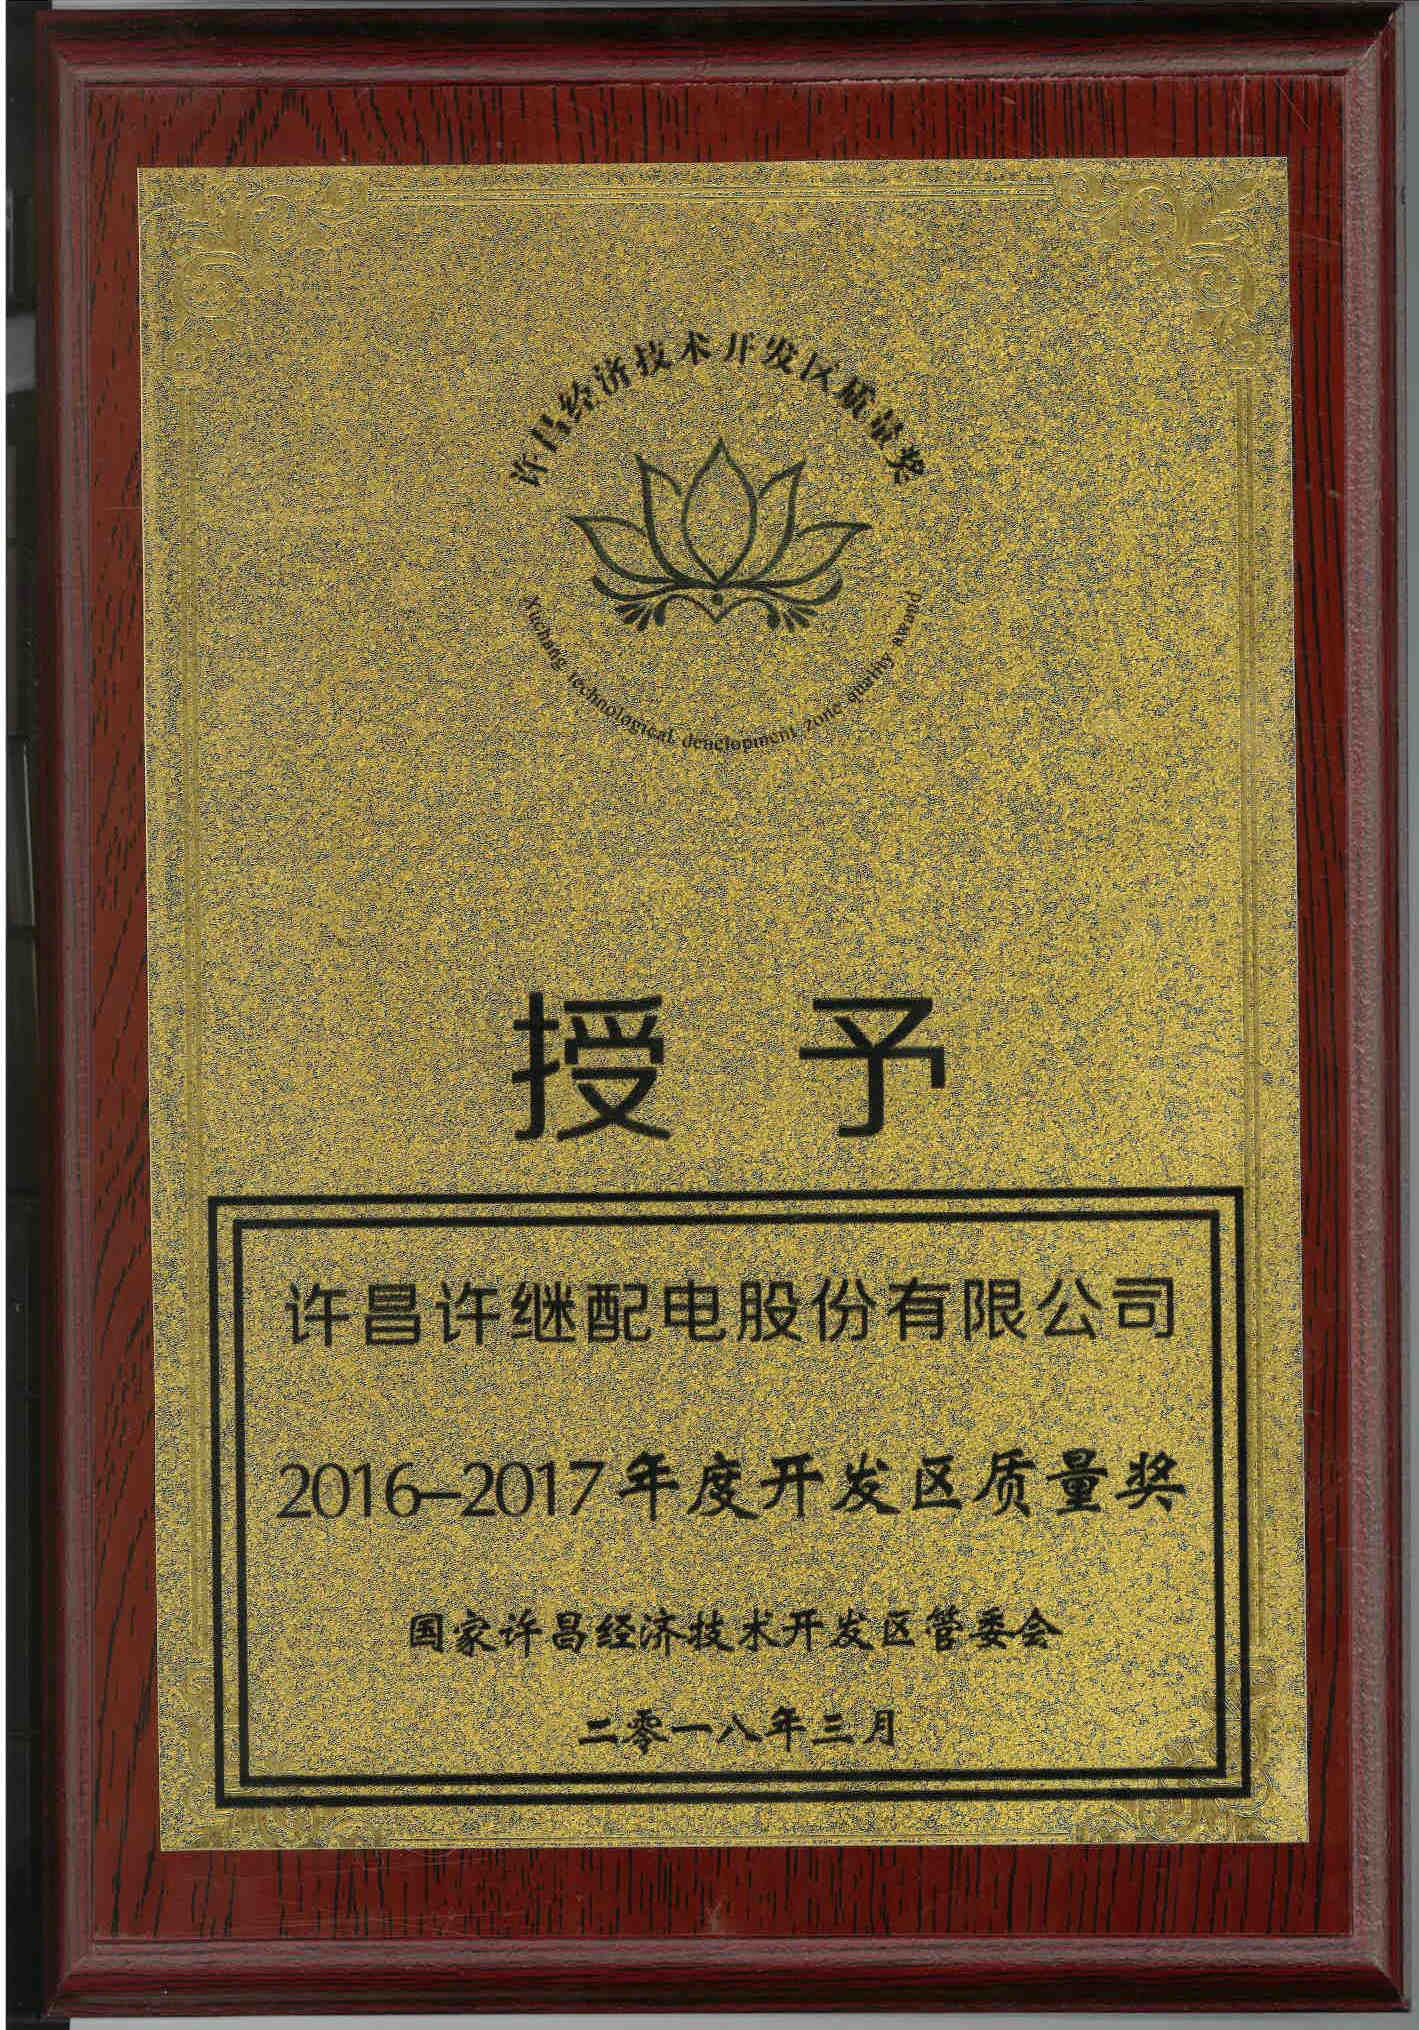 2016-2017年度开发区质量奖.jpg